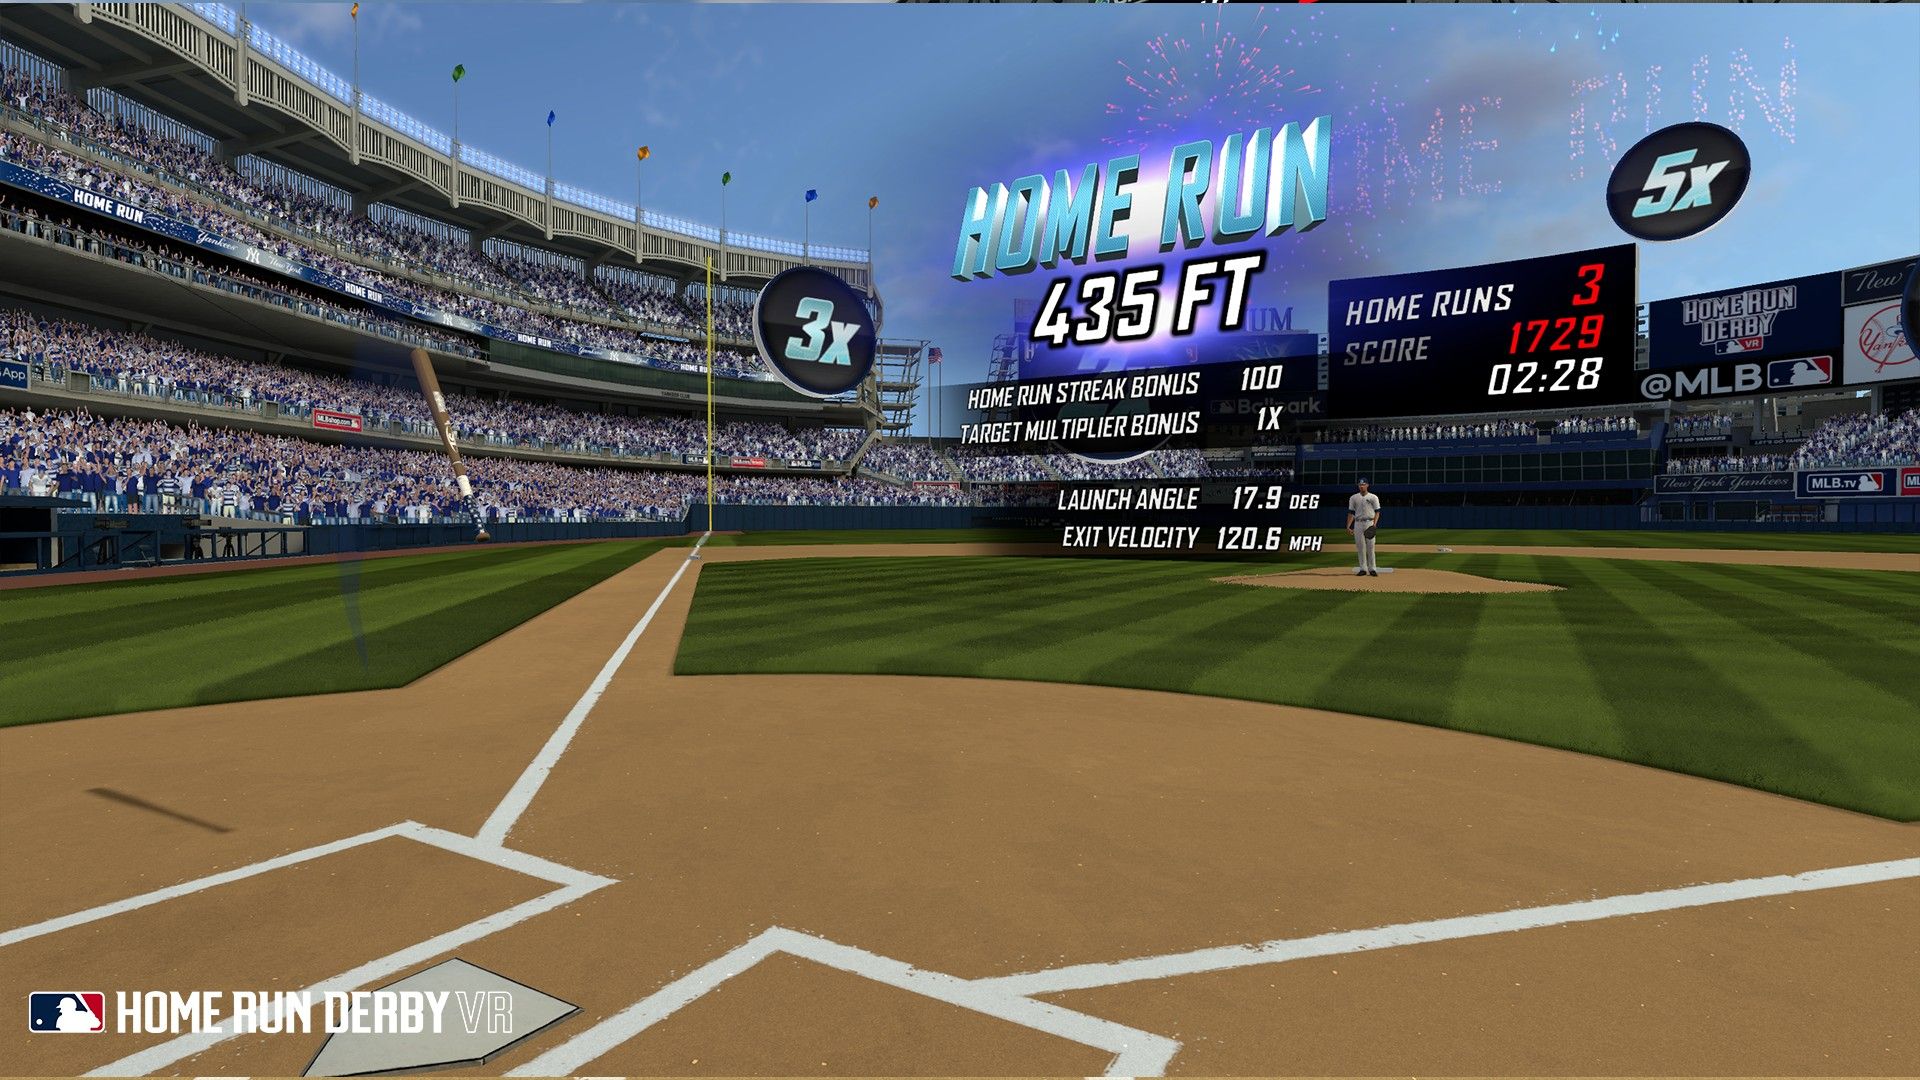 MLB HRD VR Home Run Stats sendo exibidas após uma rebatida, mostrando quantos pés foi atingido e voou, velocidade e ângulo, bem como multiplicadores anteriores sendo aplicados.